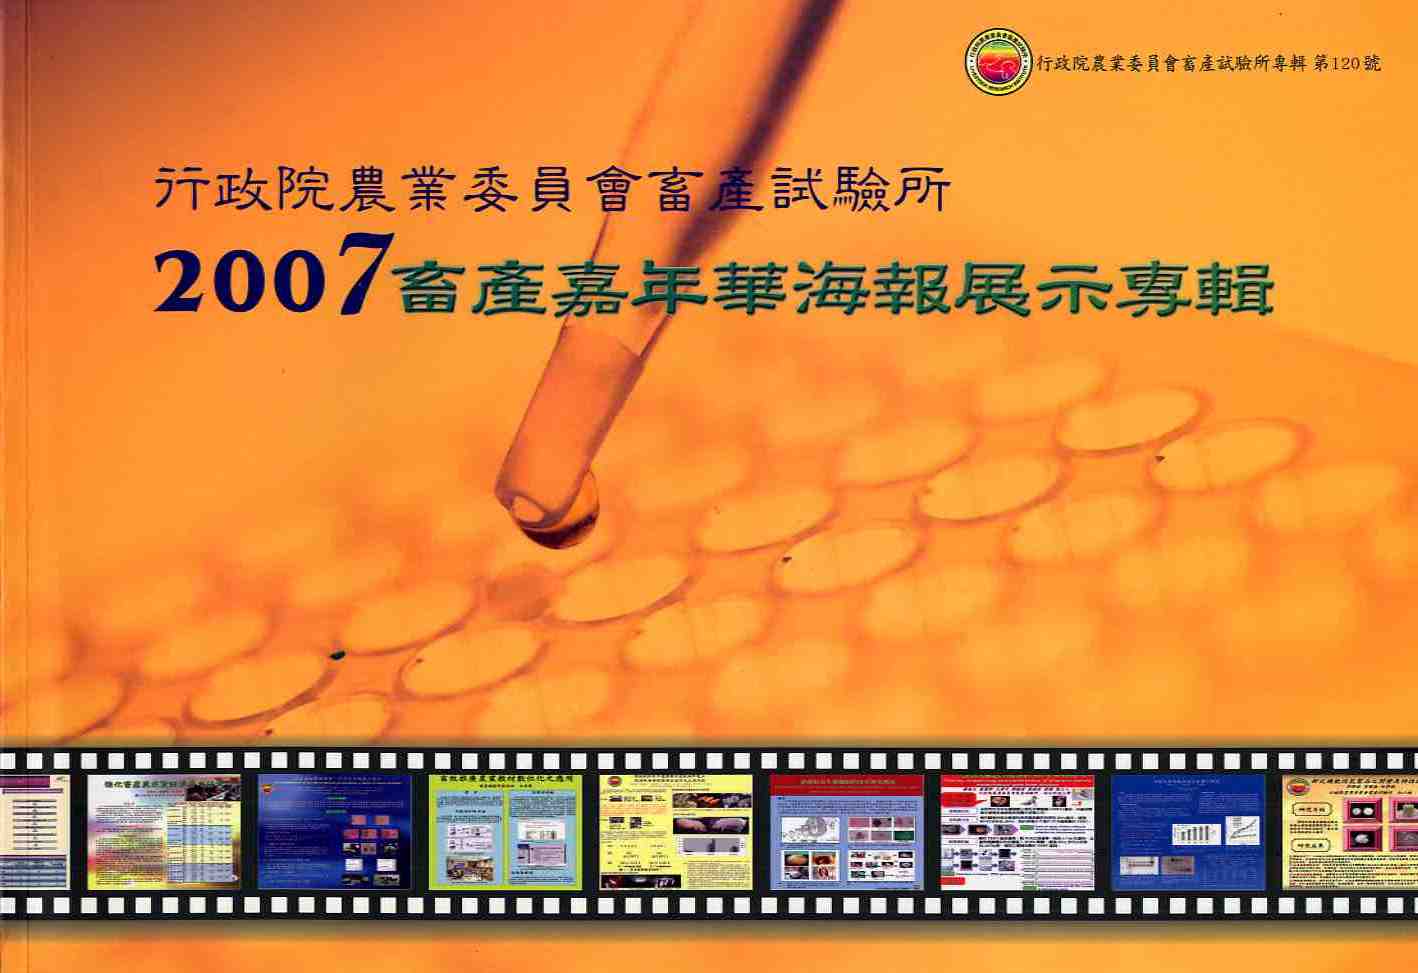 2007畜產嘉年華海報展示專輯